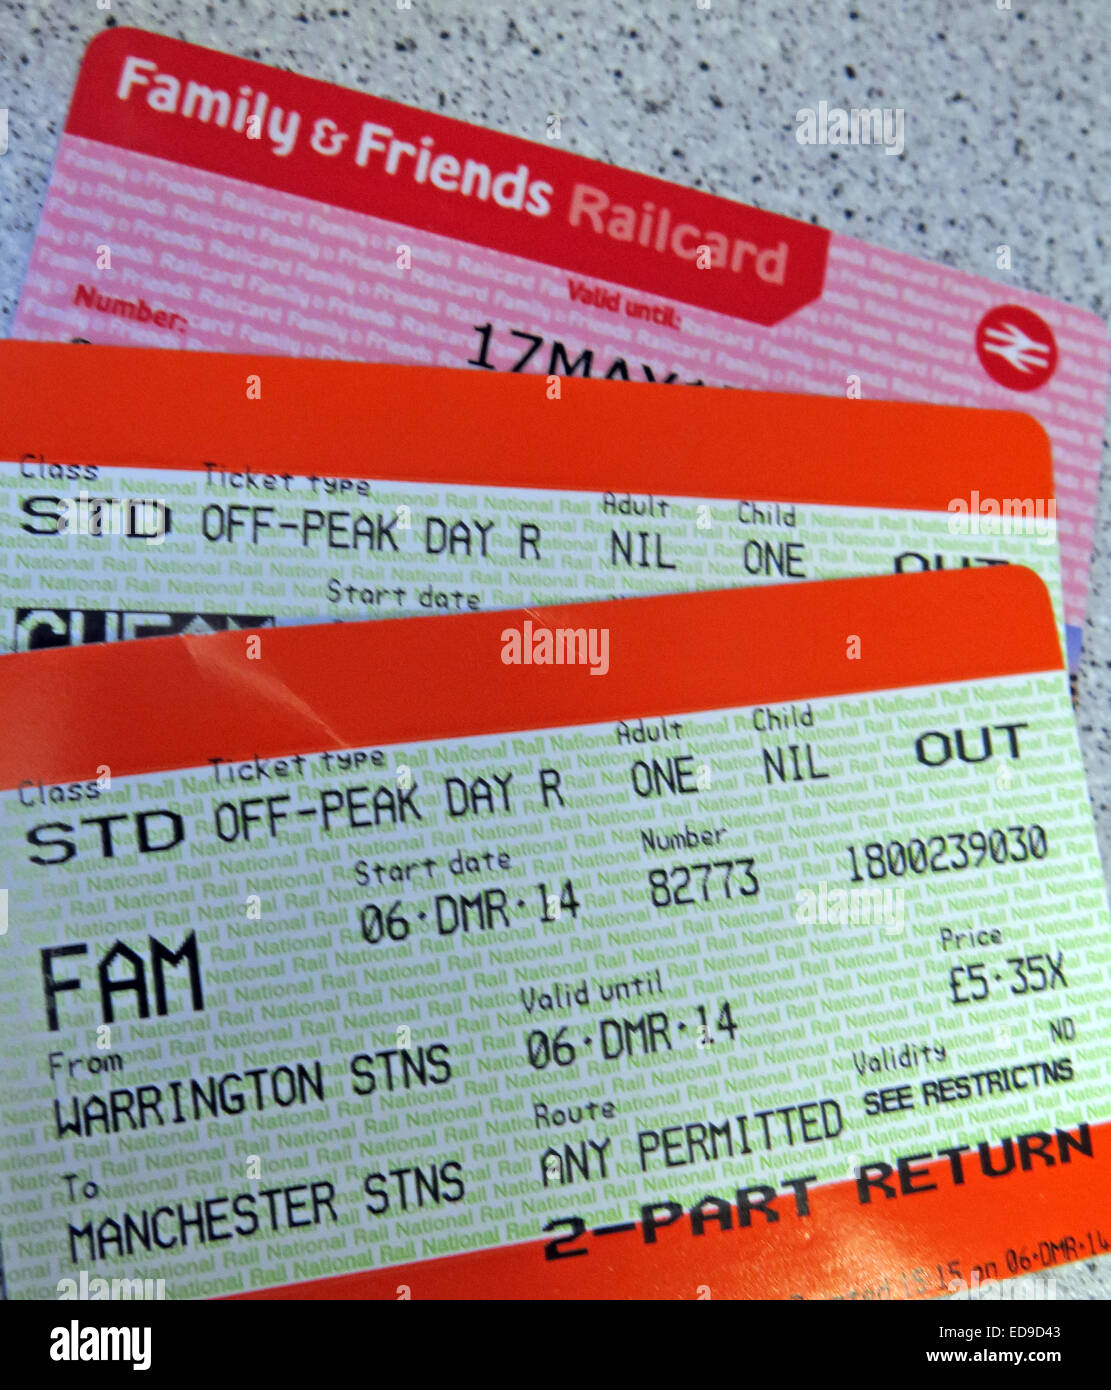 Famiglia & Amici UK railcard con biglietti Foto Stock